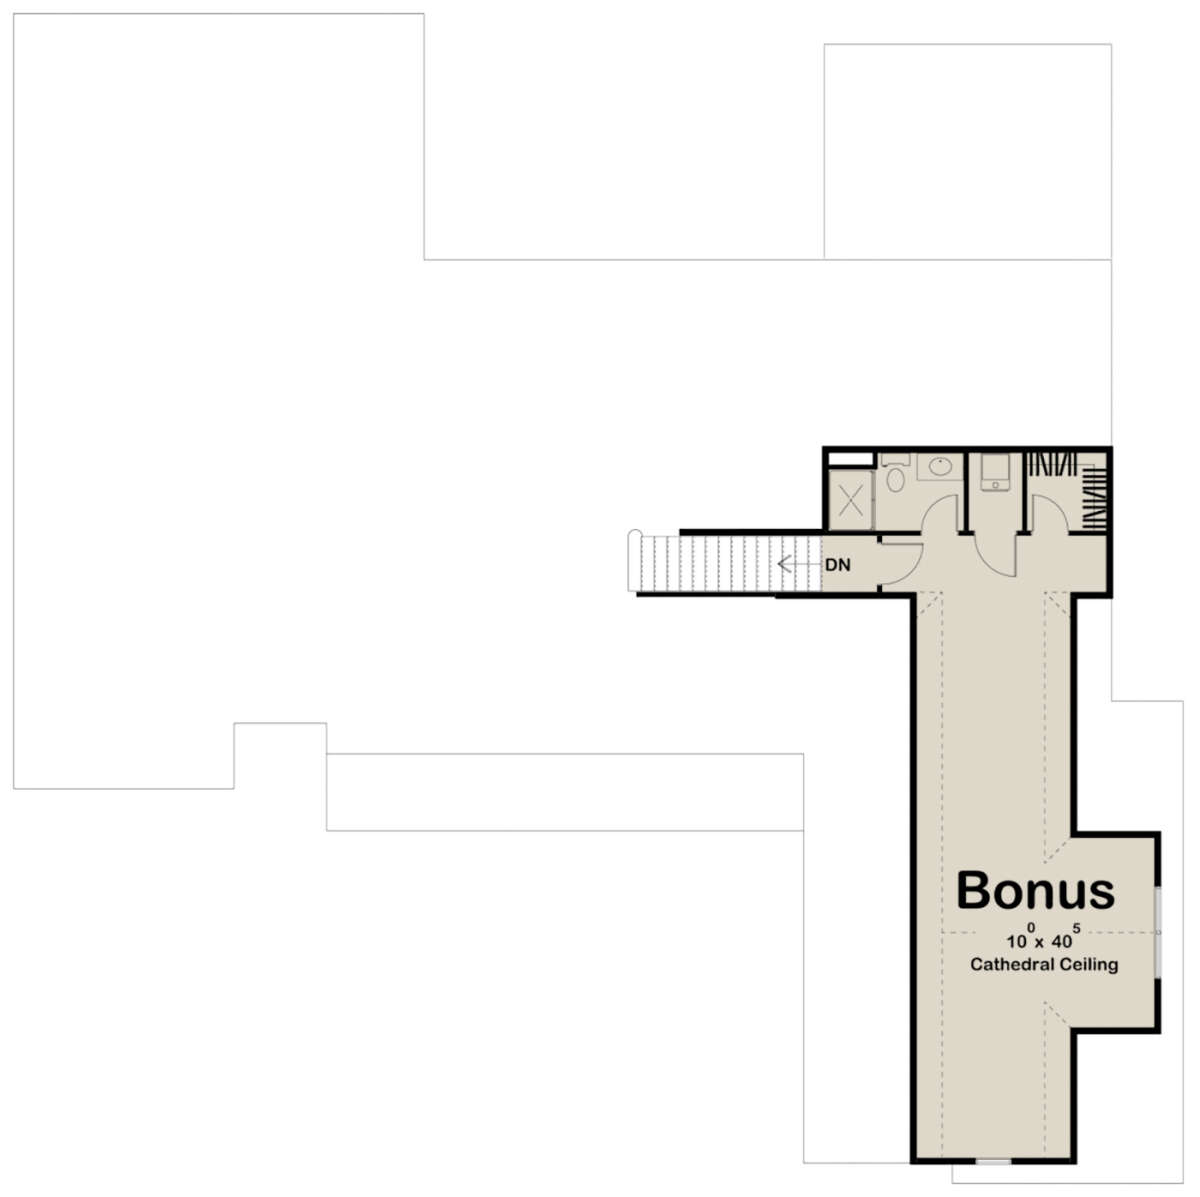 Bonus Room for House Plan #963-00451